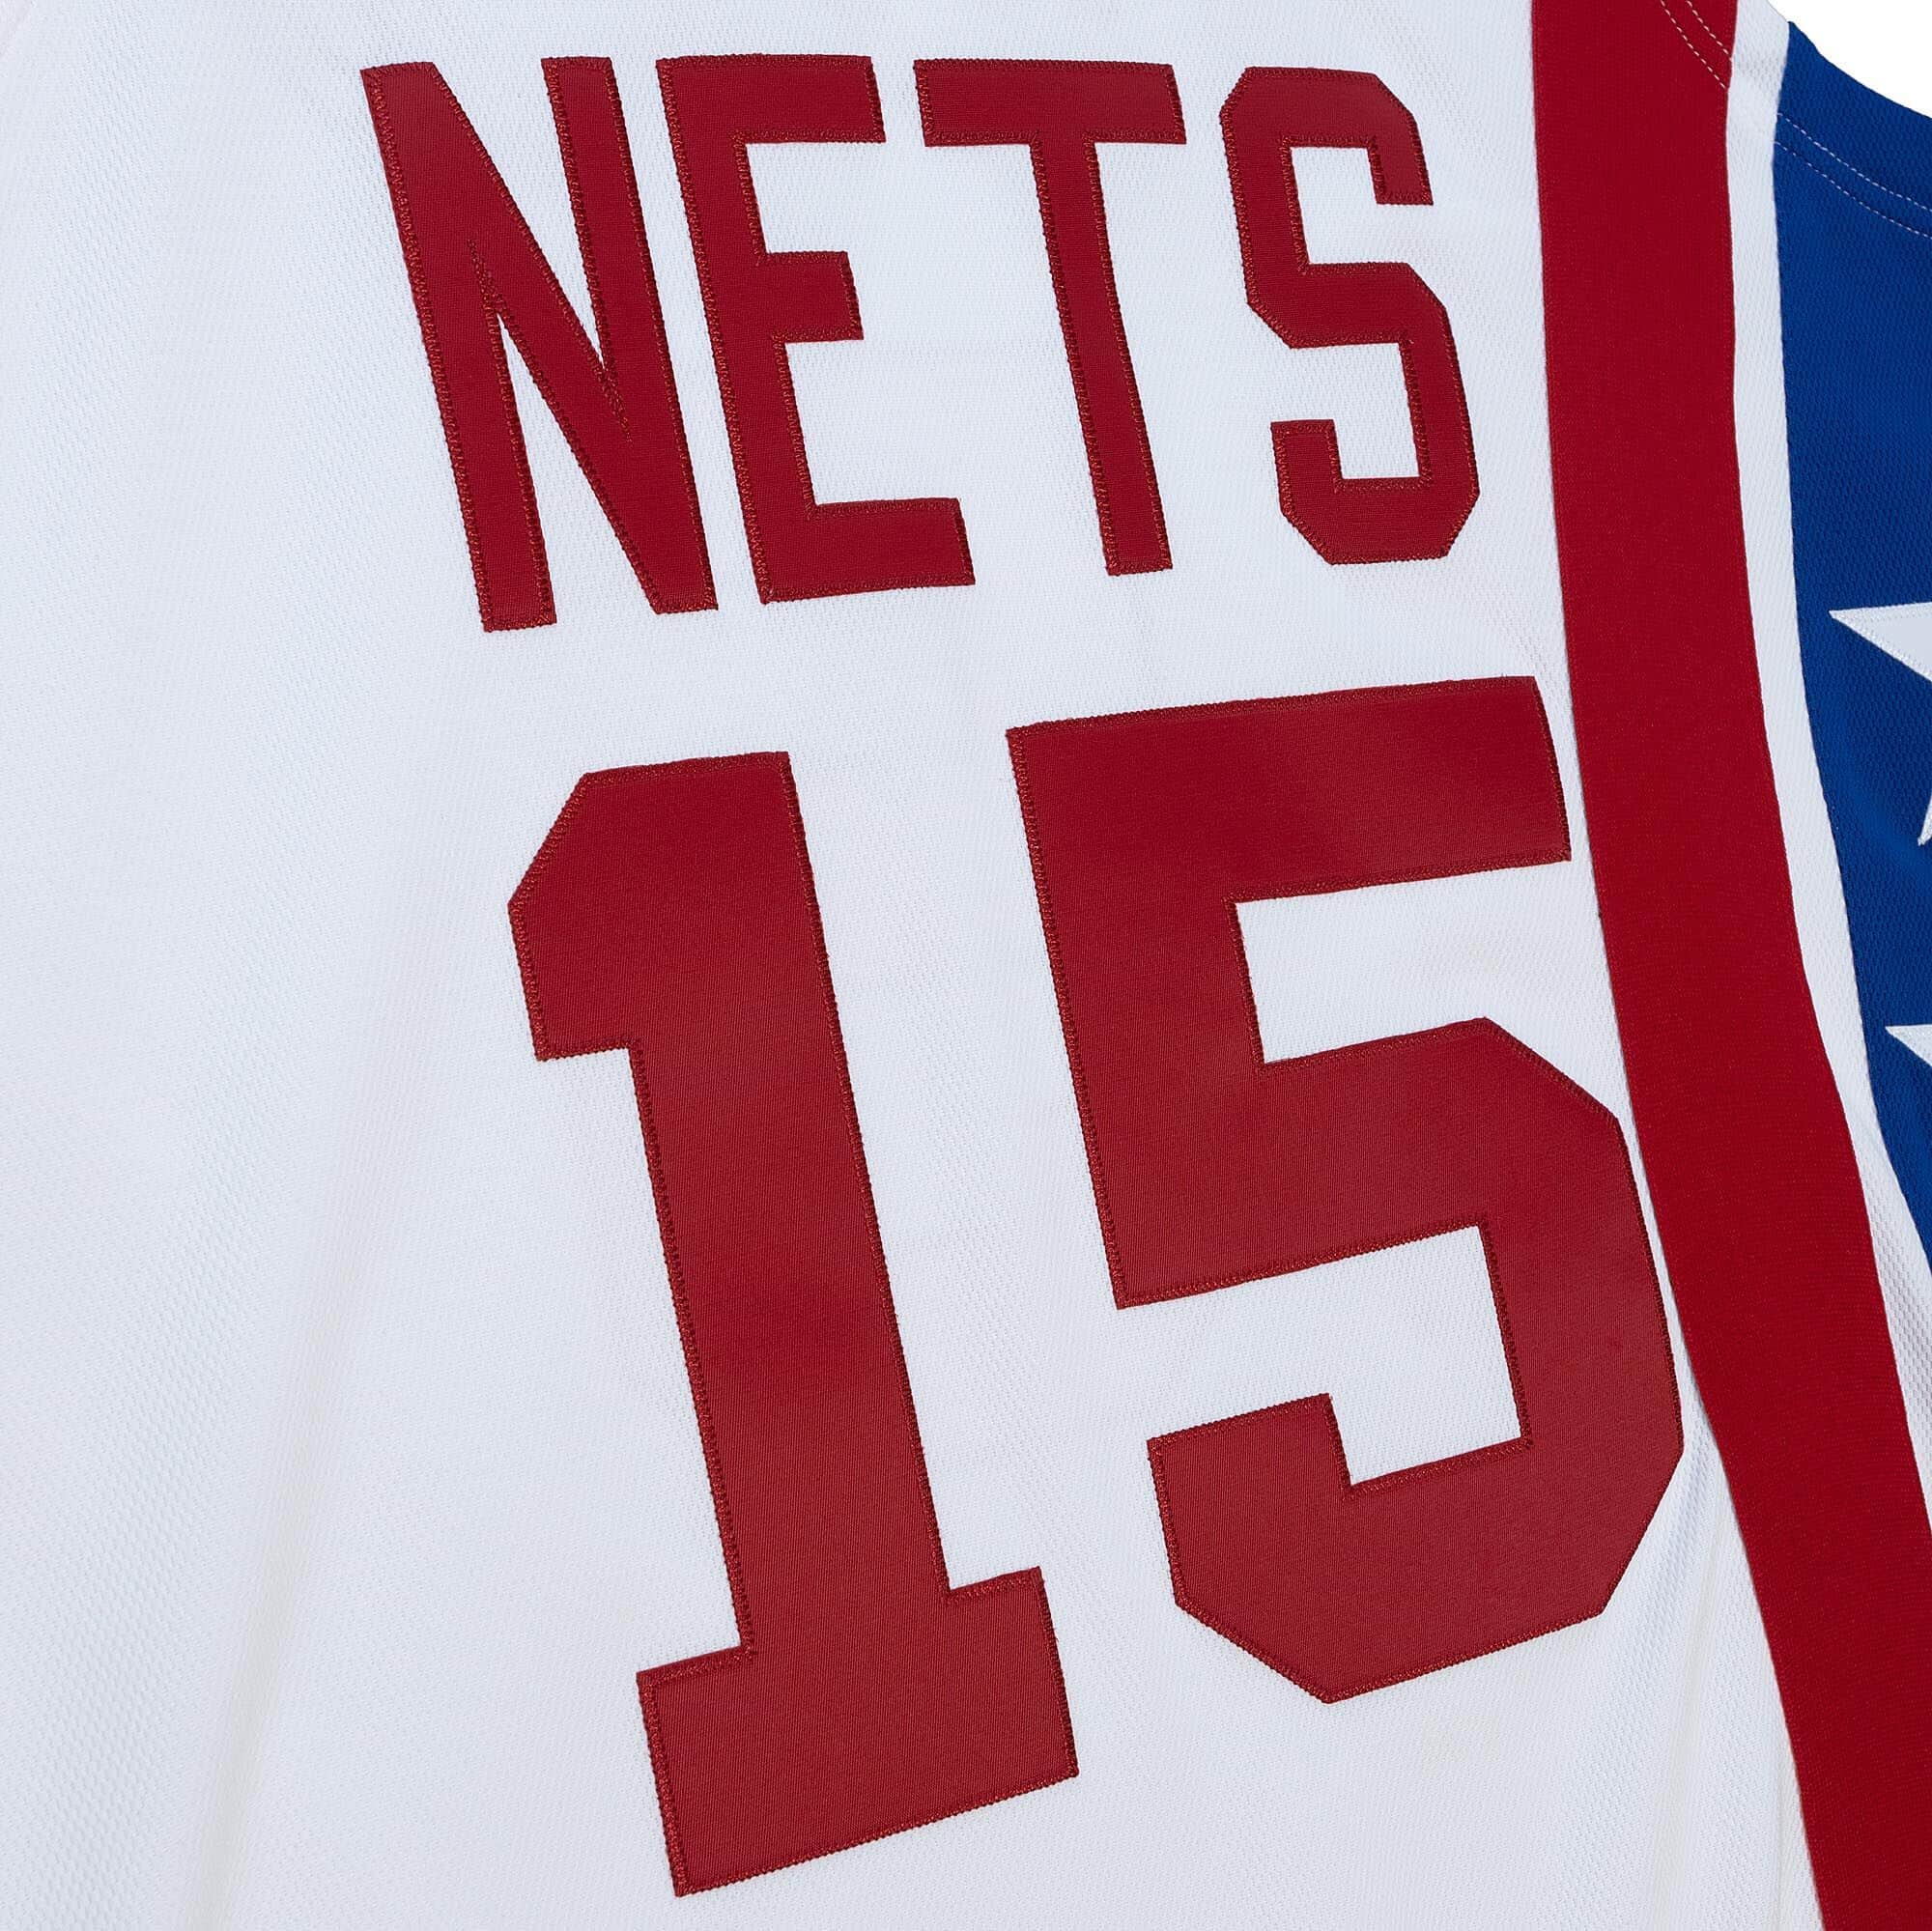 New Jersey Nets Jason Kidd #5 Reebok Authentic NBA Jersey 2XL